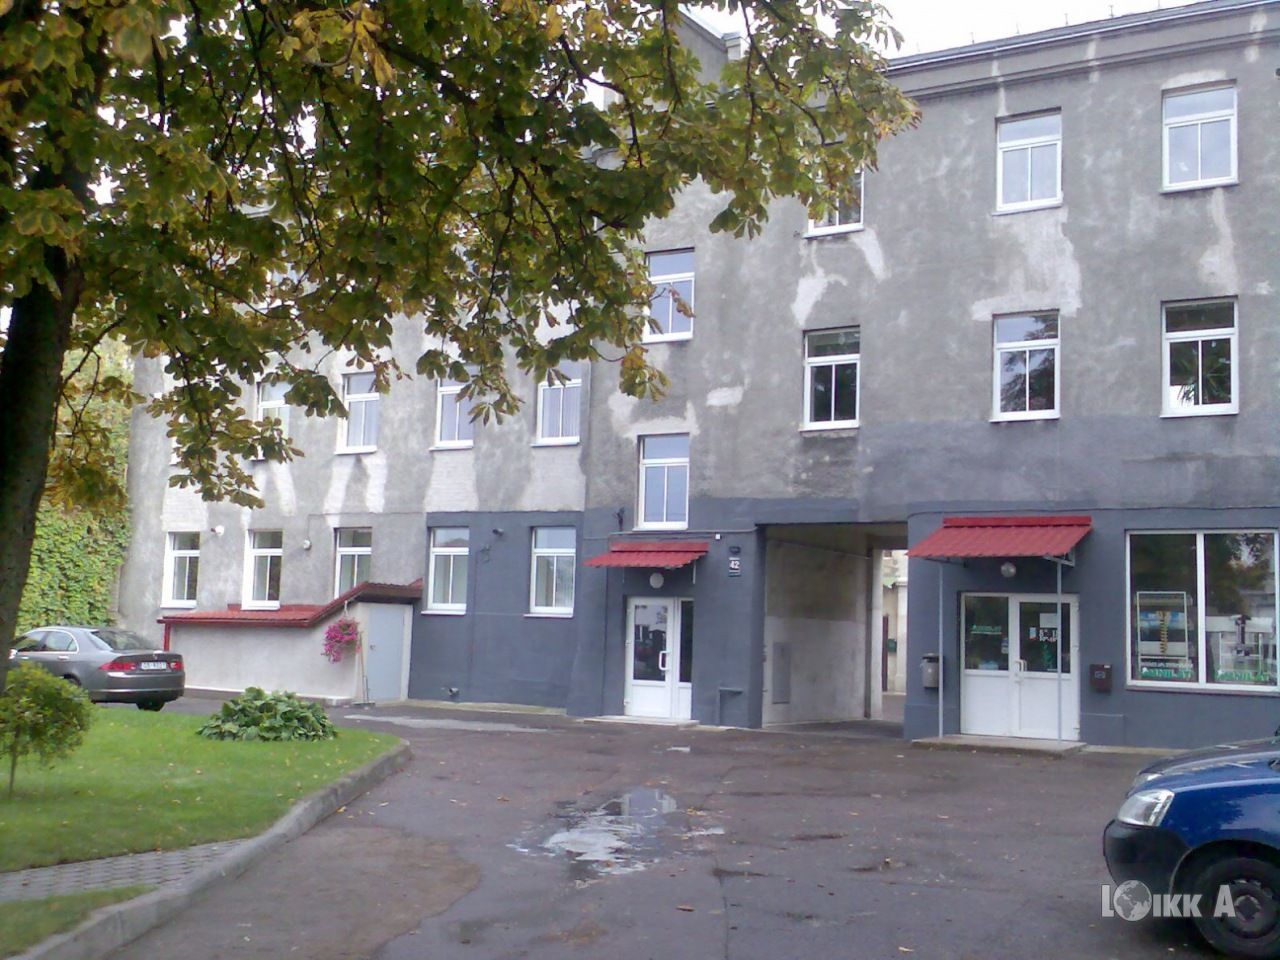 Квартира в Риге, Латвия, 42 м2 - фото 1